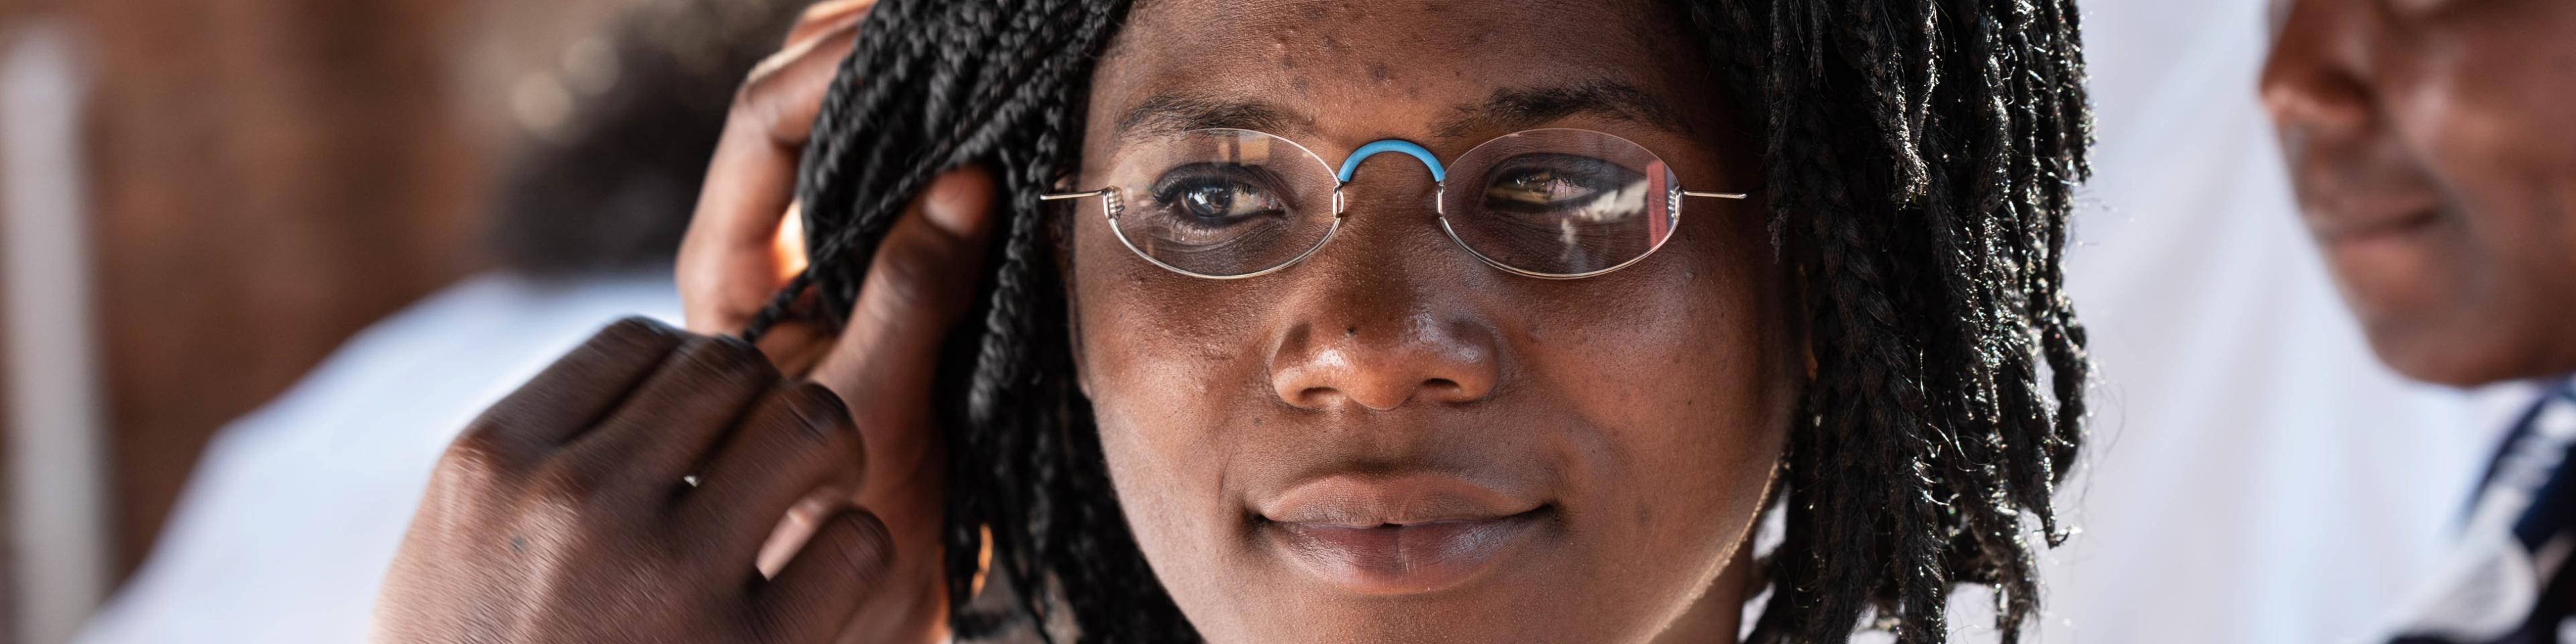 Junge Frau aus Burkina Faso erhält eine EinDollarBrille